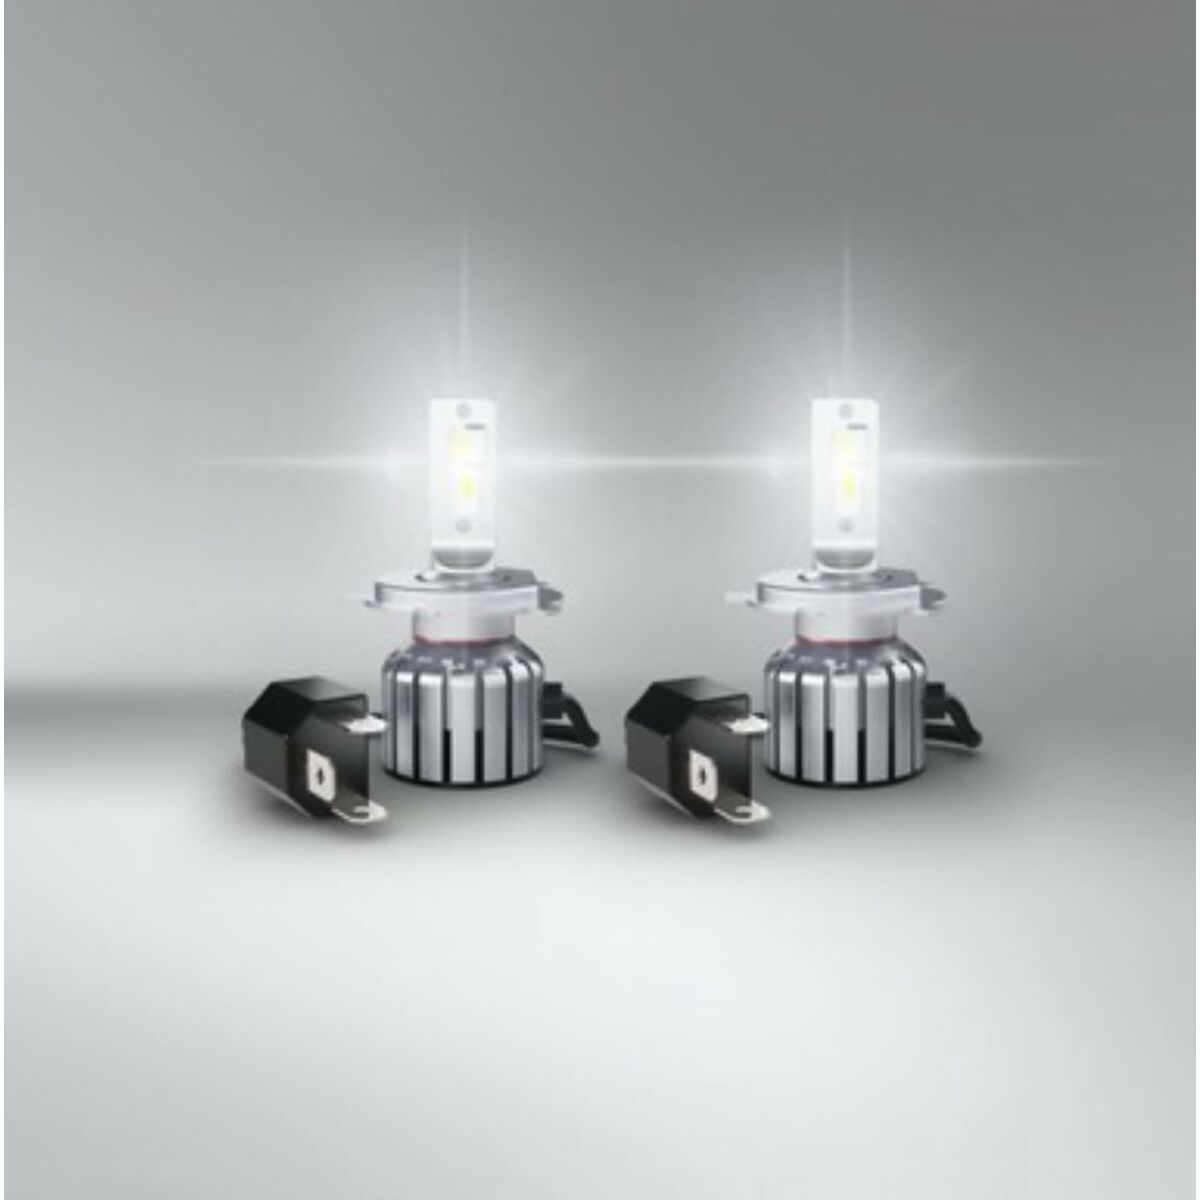 Lâmpada para carro Osram LEDriving HL Bright 15 W H4 12 V 6000 K